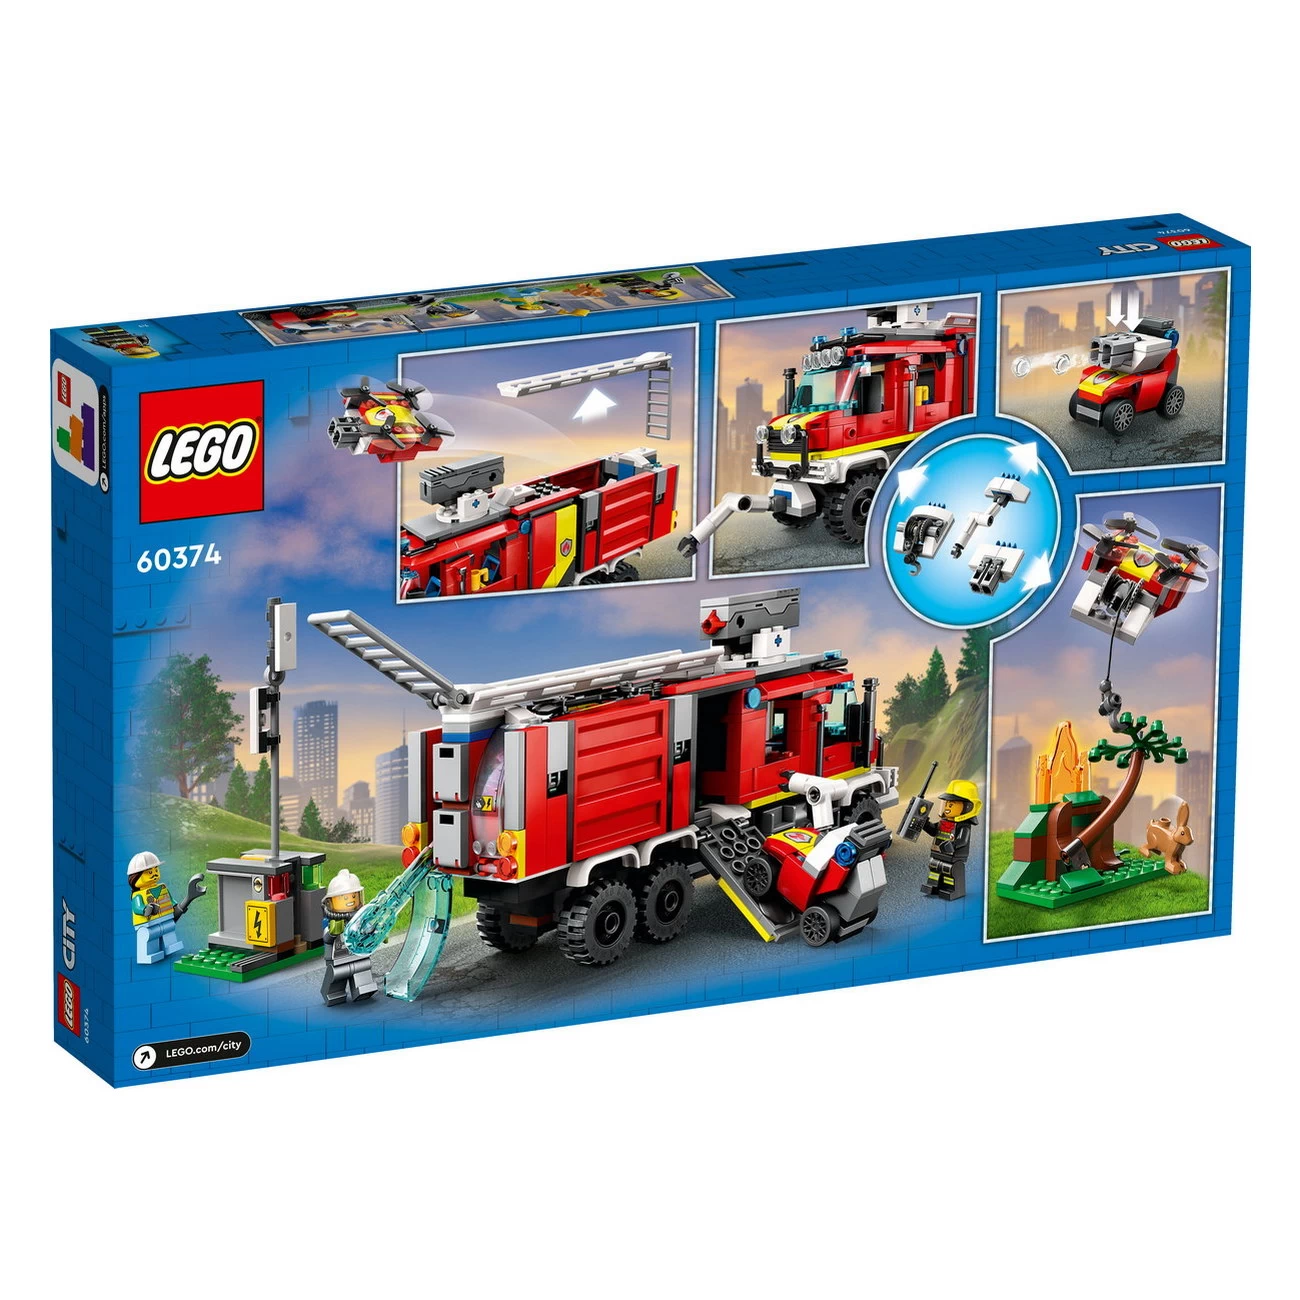 LEGO City 60374 - Einsatzleitwagen der Feuerwehr